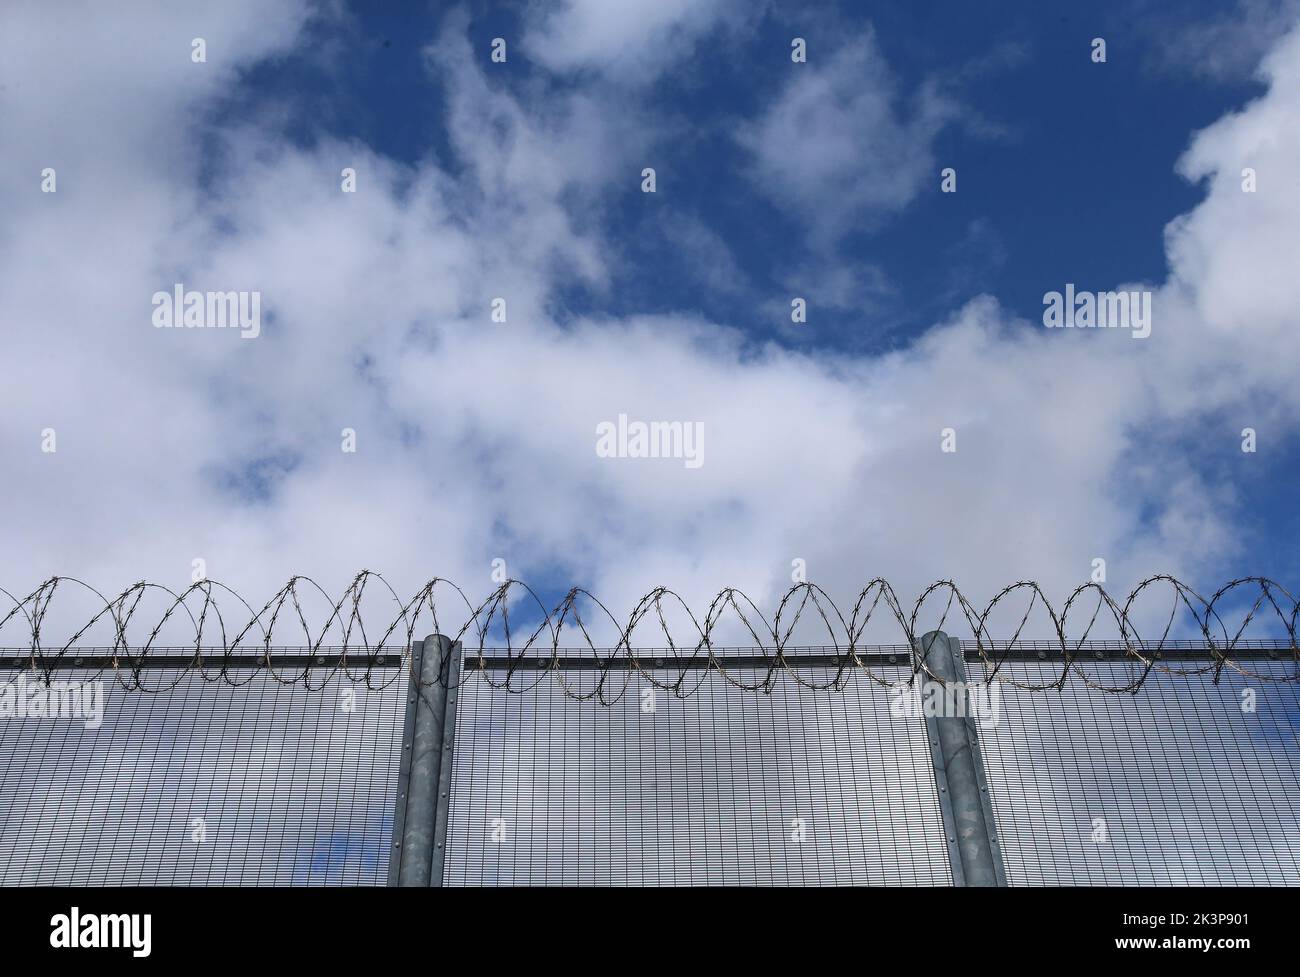 Photo du dossier datée du 05/04/16 d'une vue générale de la clôture de la prison de Cork désaffectée, comme les députés ont demandé au gouvernement de réviser les peines dépassées pour les criminels dangereux après avoir qualifié le régime de « irrémédiablement défectueux ». Banque D'Images